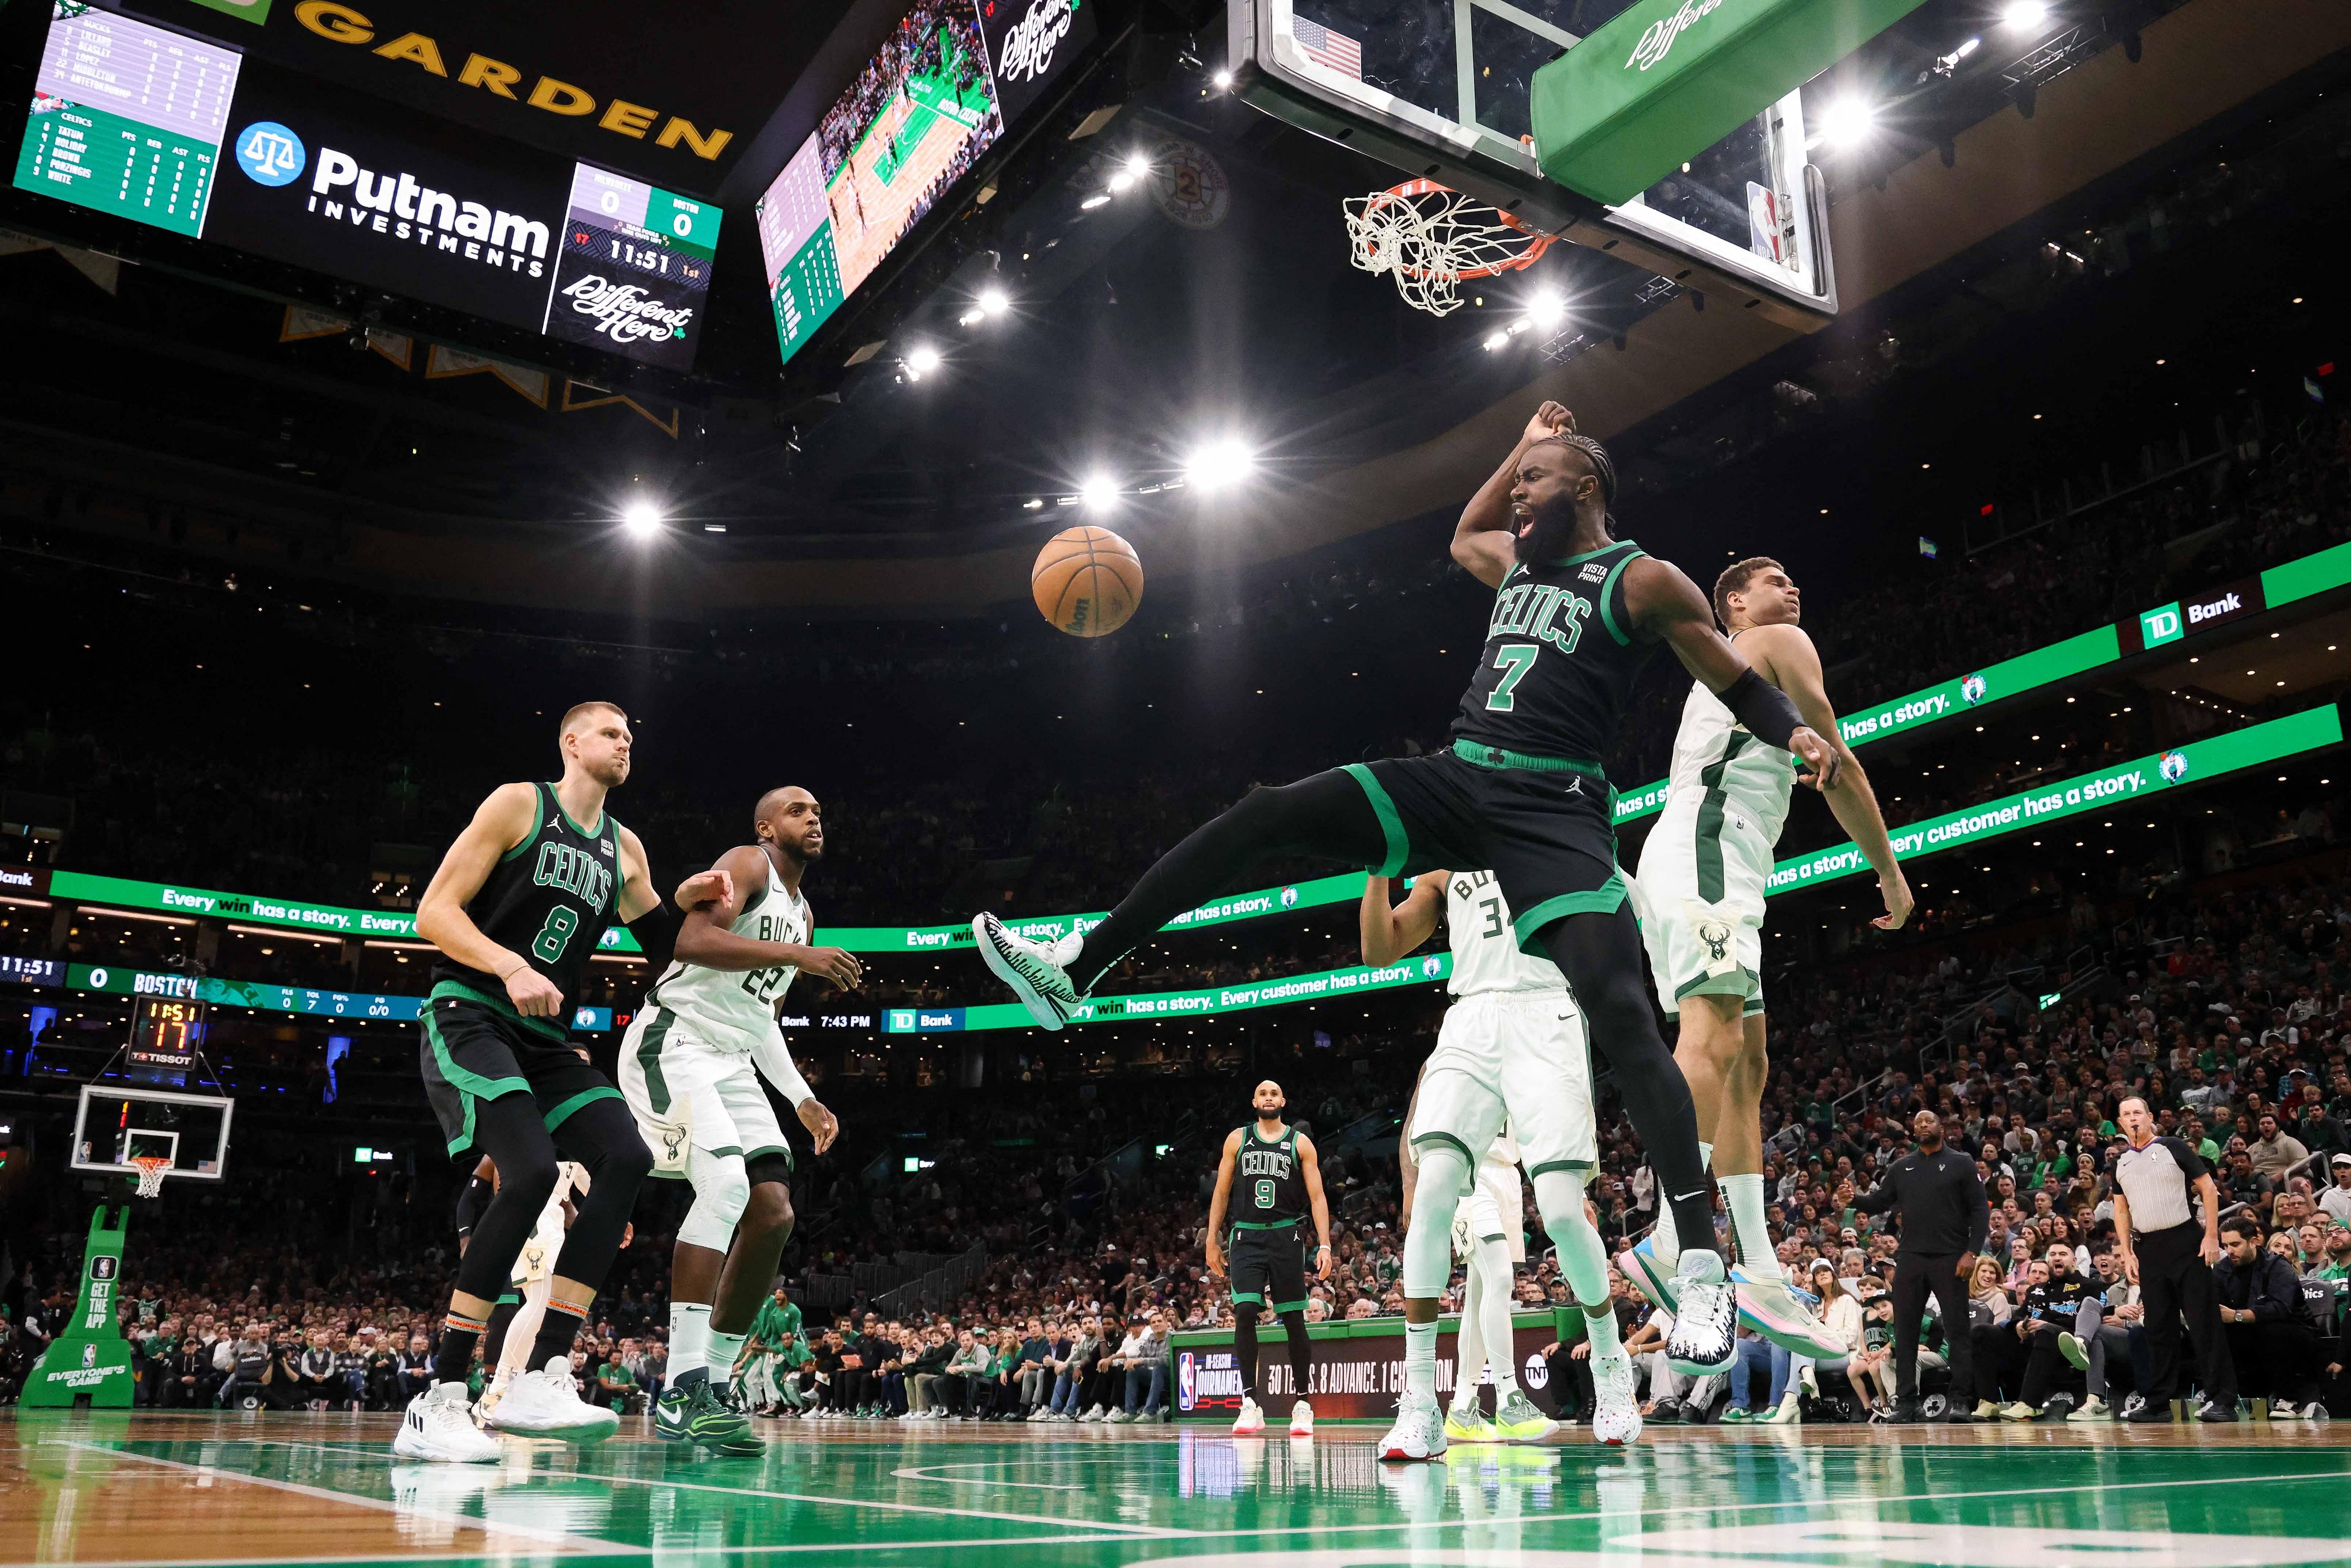 NBA roundup: Hornets sting Celtics, Nikola Jokic tossed in Denver win